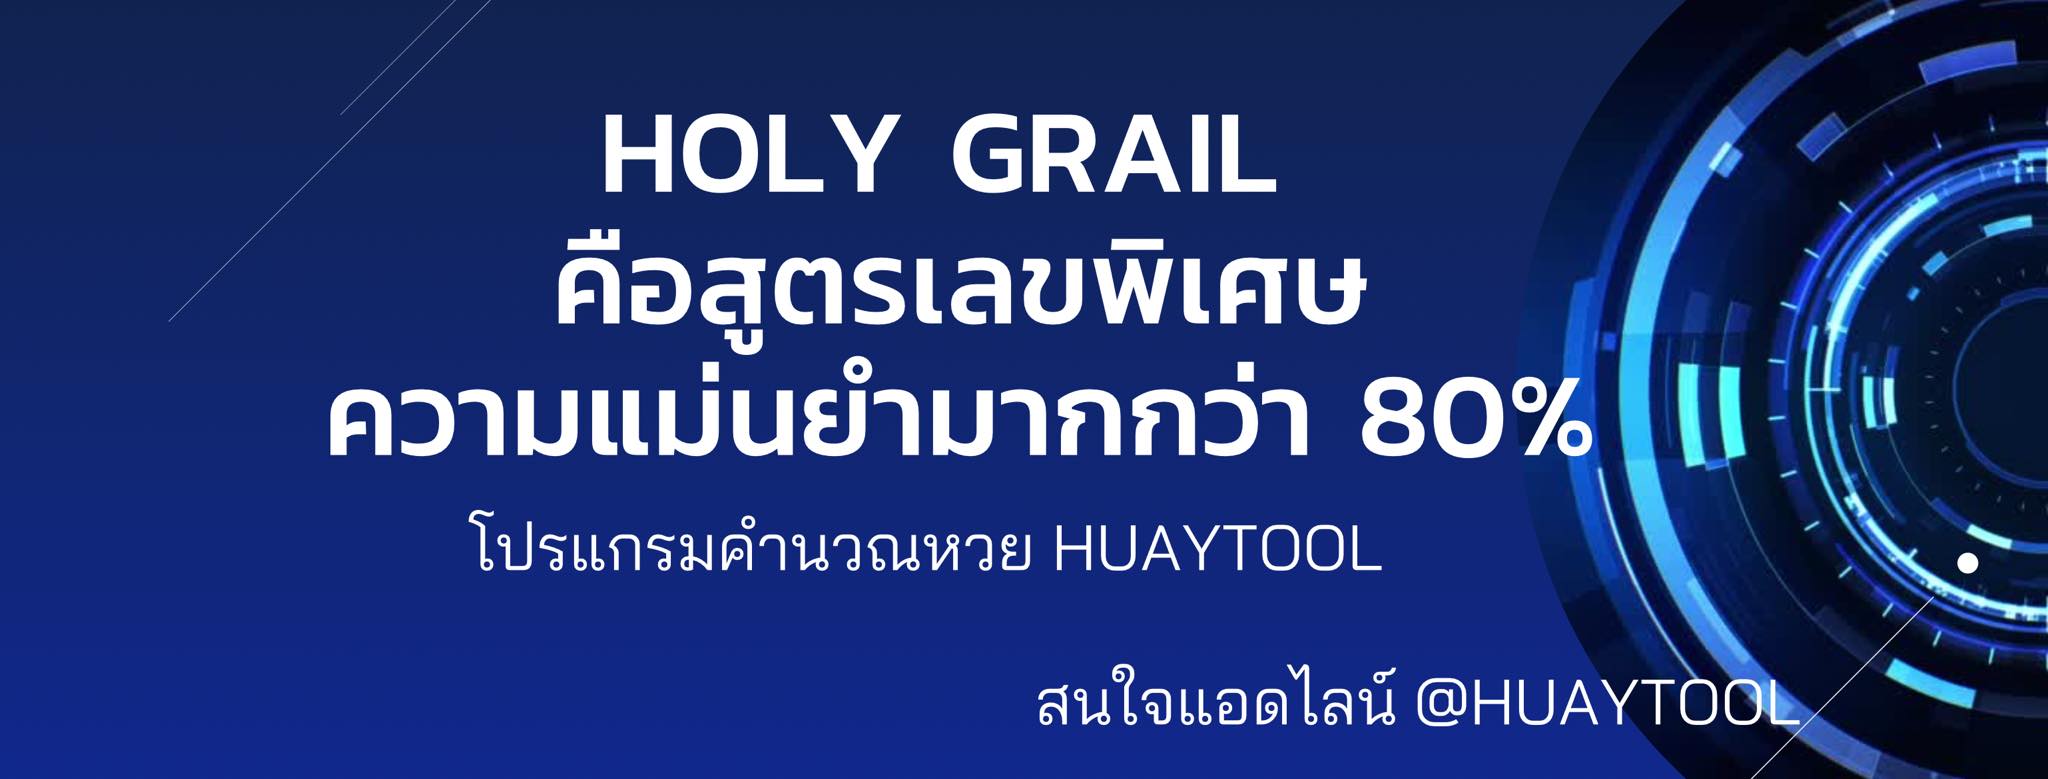 เลข HOLY GRAIL คืออะไร Huaytool มีคำตอบ